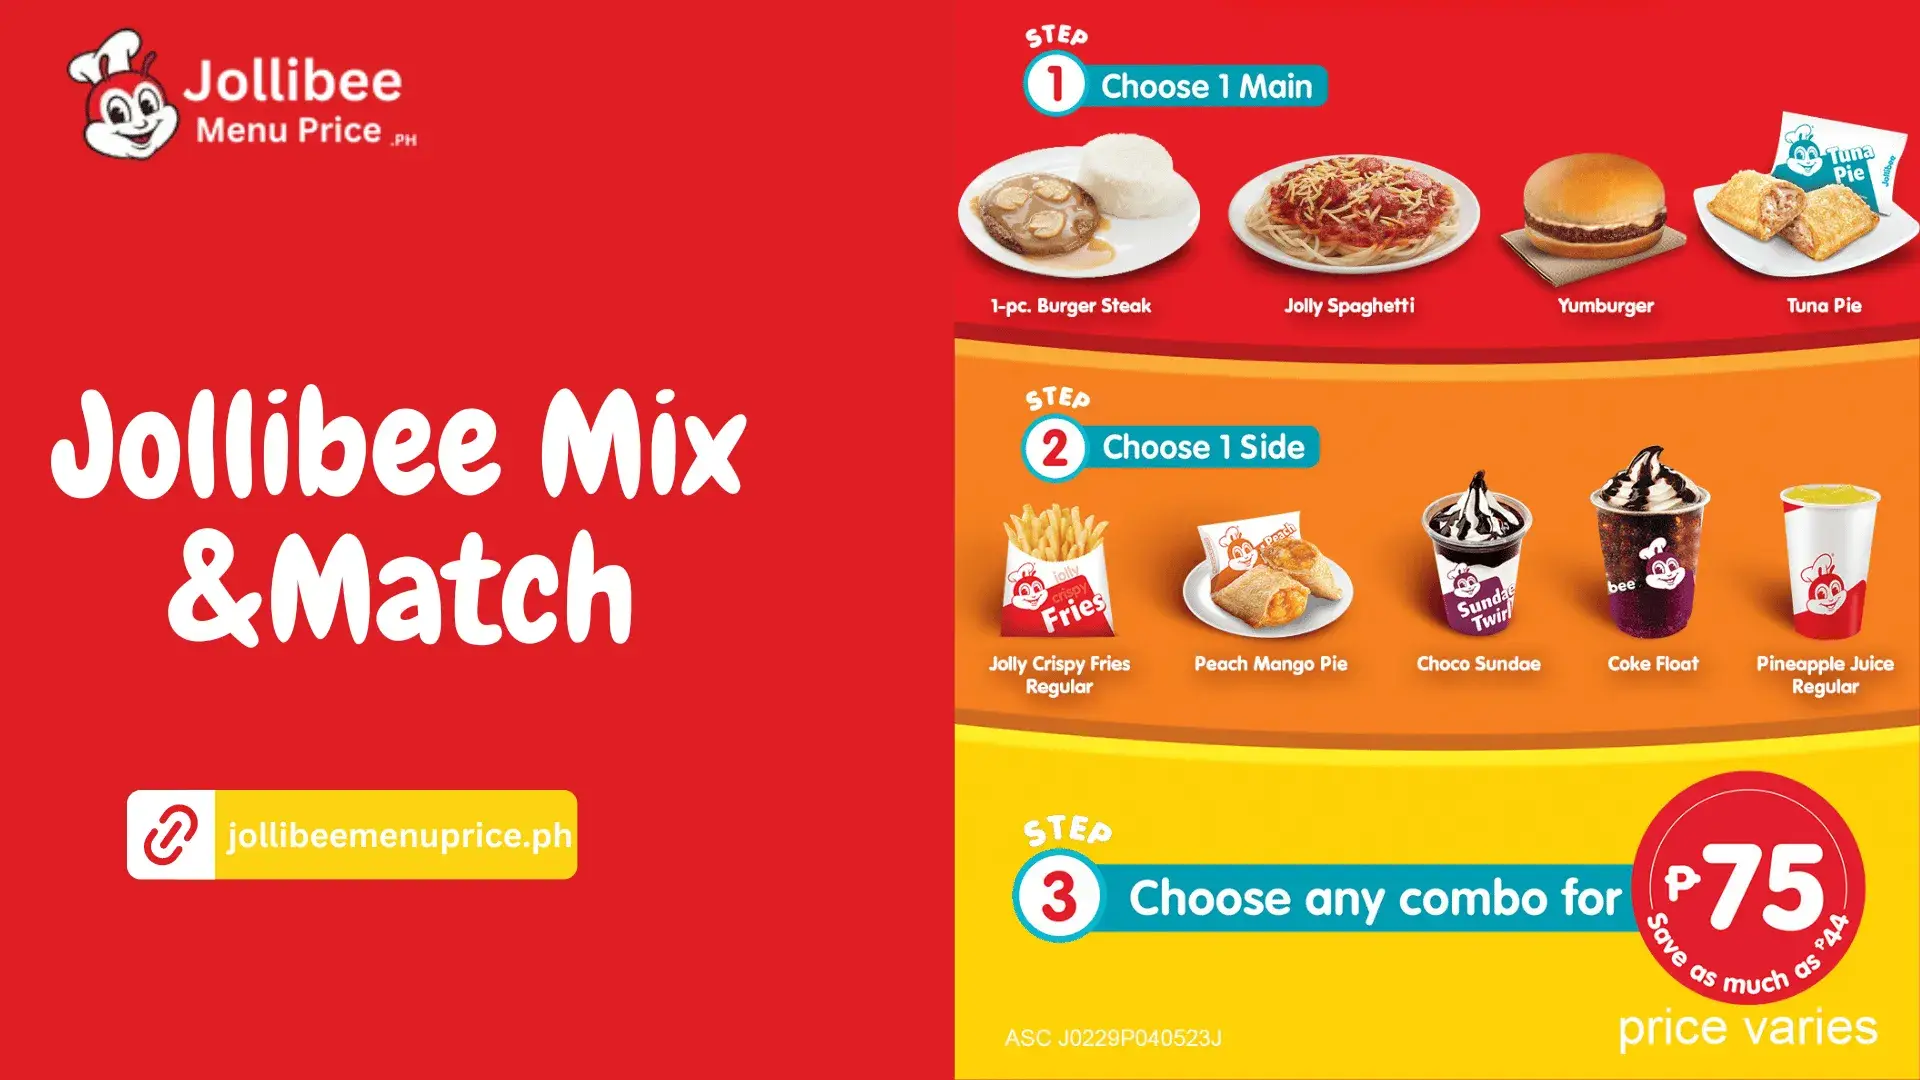 Jollibee mix & match menu